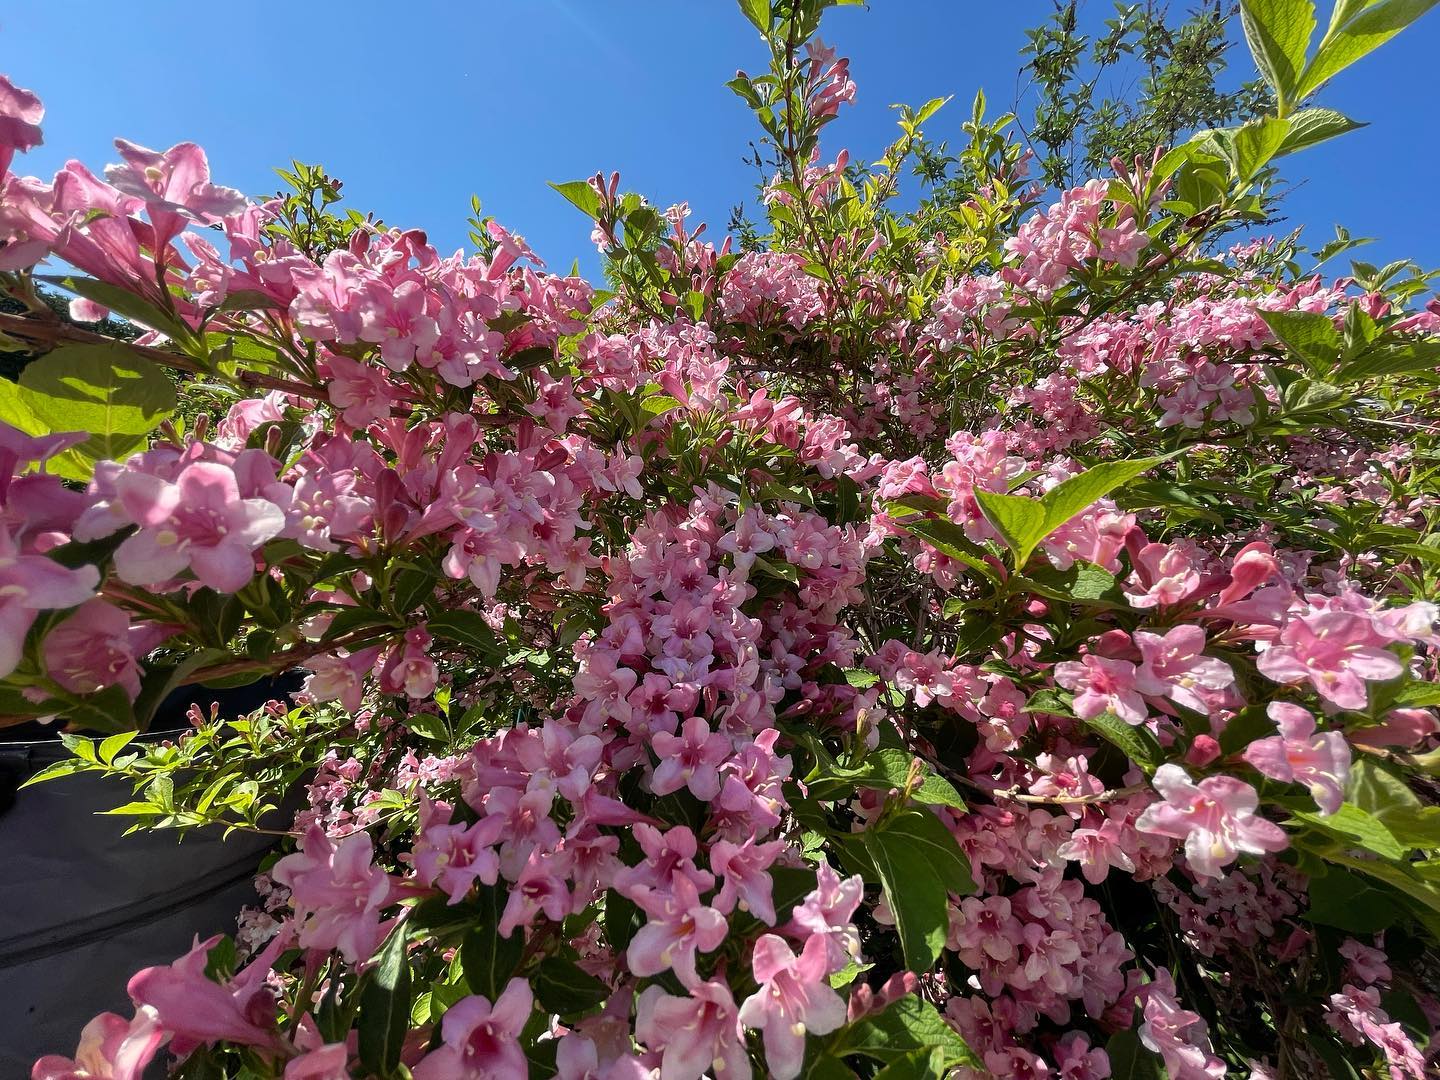 Aktueller Farbtupfer im Garten: Weigelie. 
#weigelie #garten #gartenblumen #pinktheworld #lovemygarden #carsandnature #nature #natur #pinkflowers #mehrrosainsleben #rosablumen